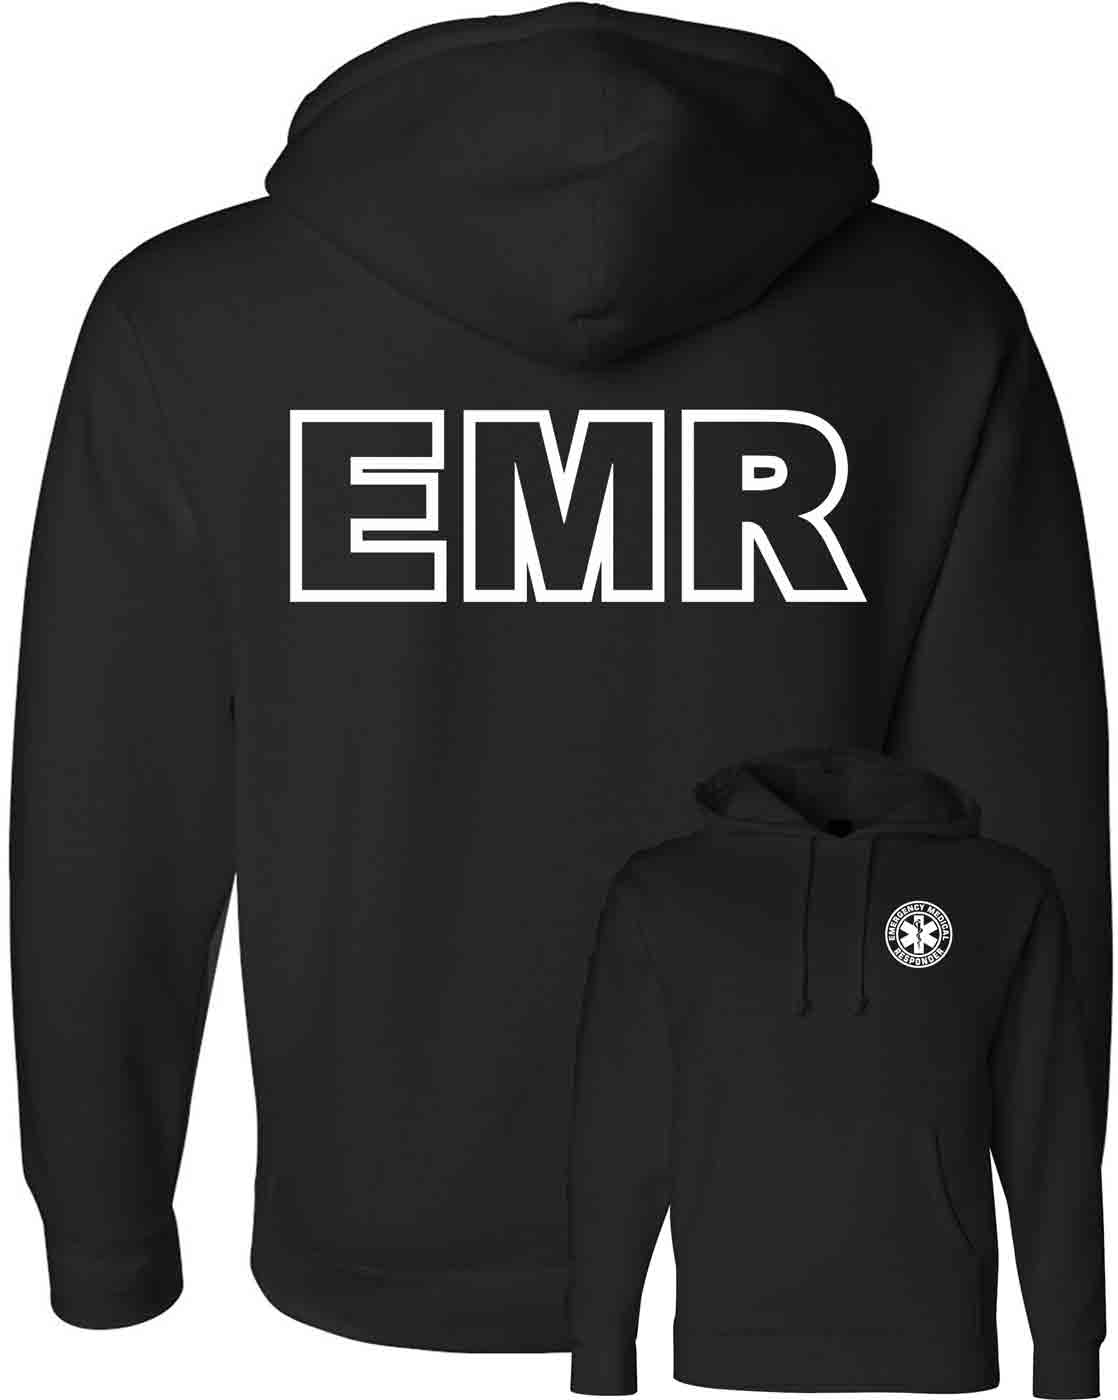 emr-hoodie-black-independent1.jpg